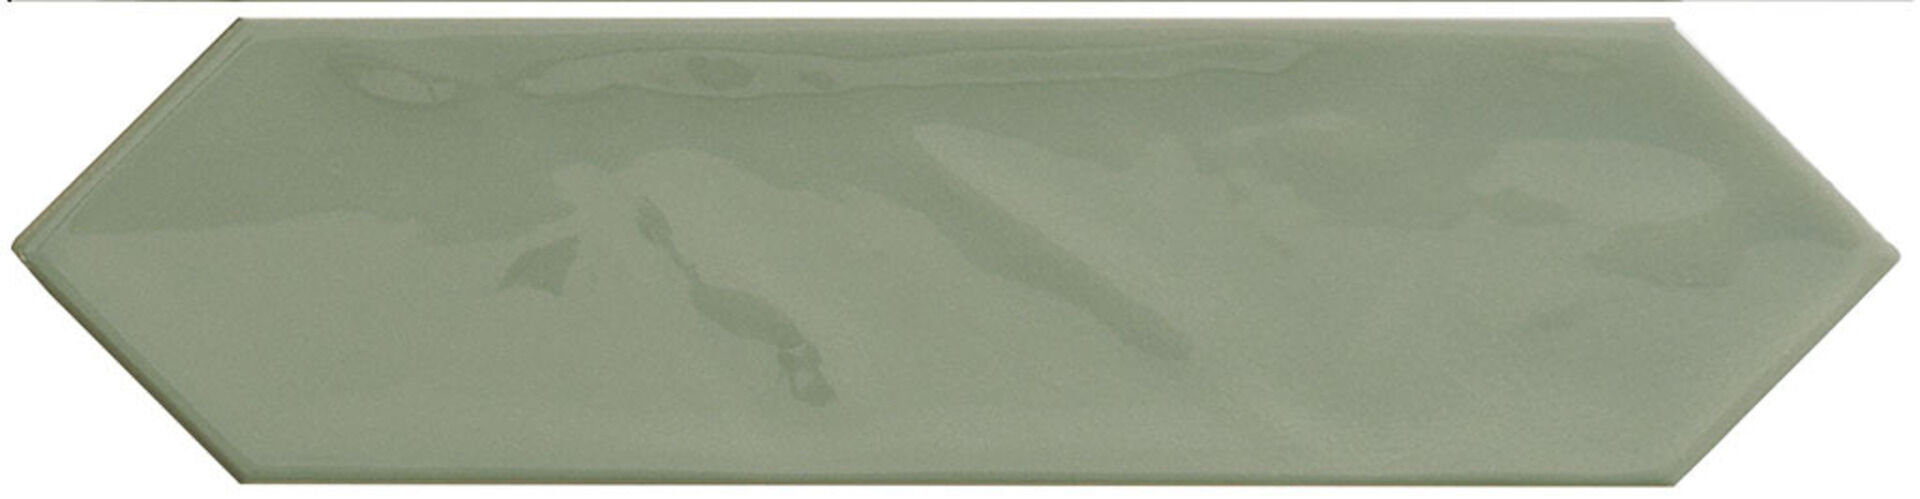 Керамическая плитка KANE PICKET SAGE 7,5*30 / коллекция KANE / производитель CIFRE CERAMICA / страна Испания